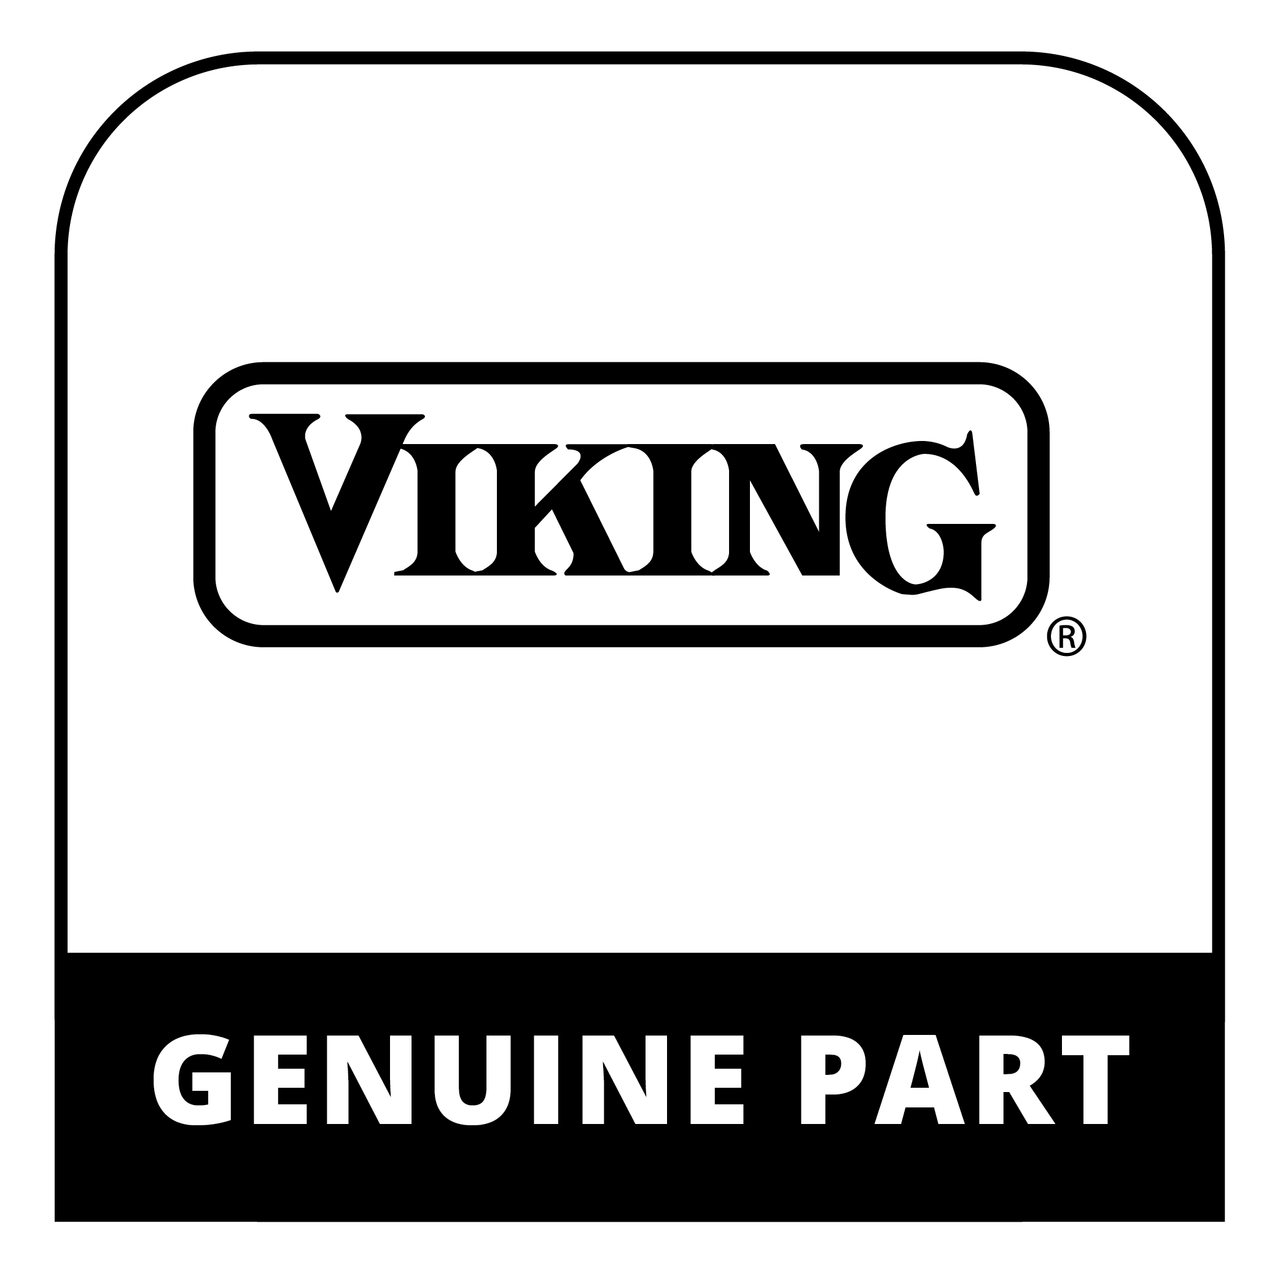 Viking PR140033 - Water Valve Mountng Brkt.Wp#2004914 - Genuine Viking Part